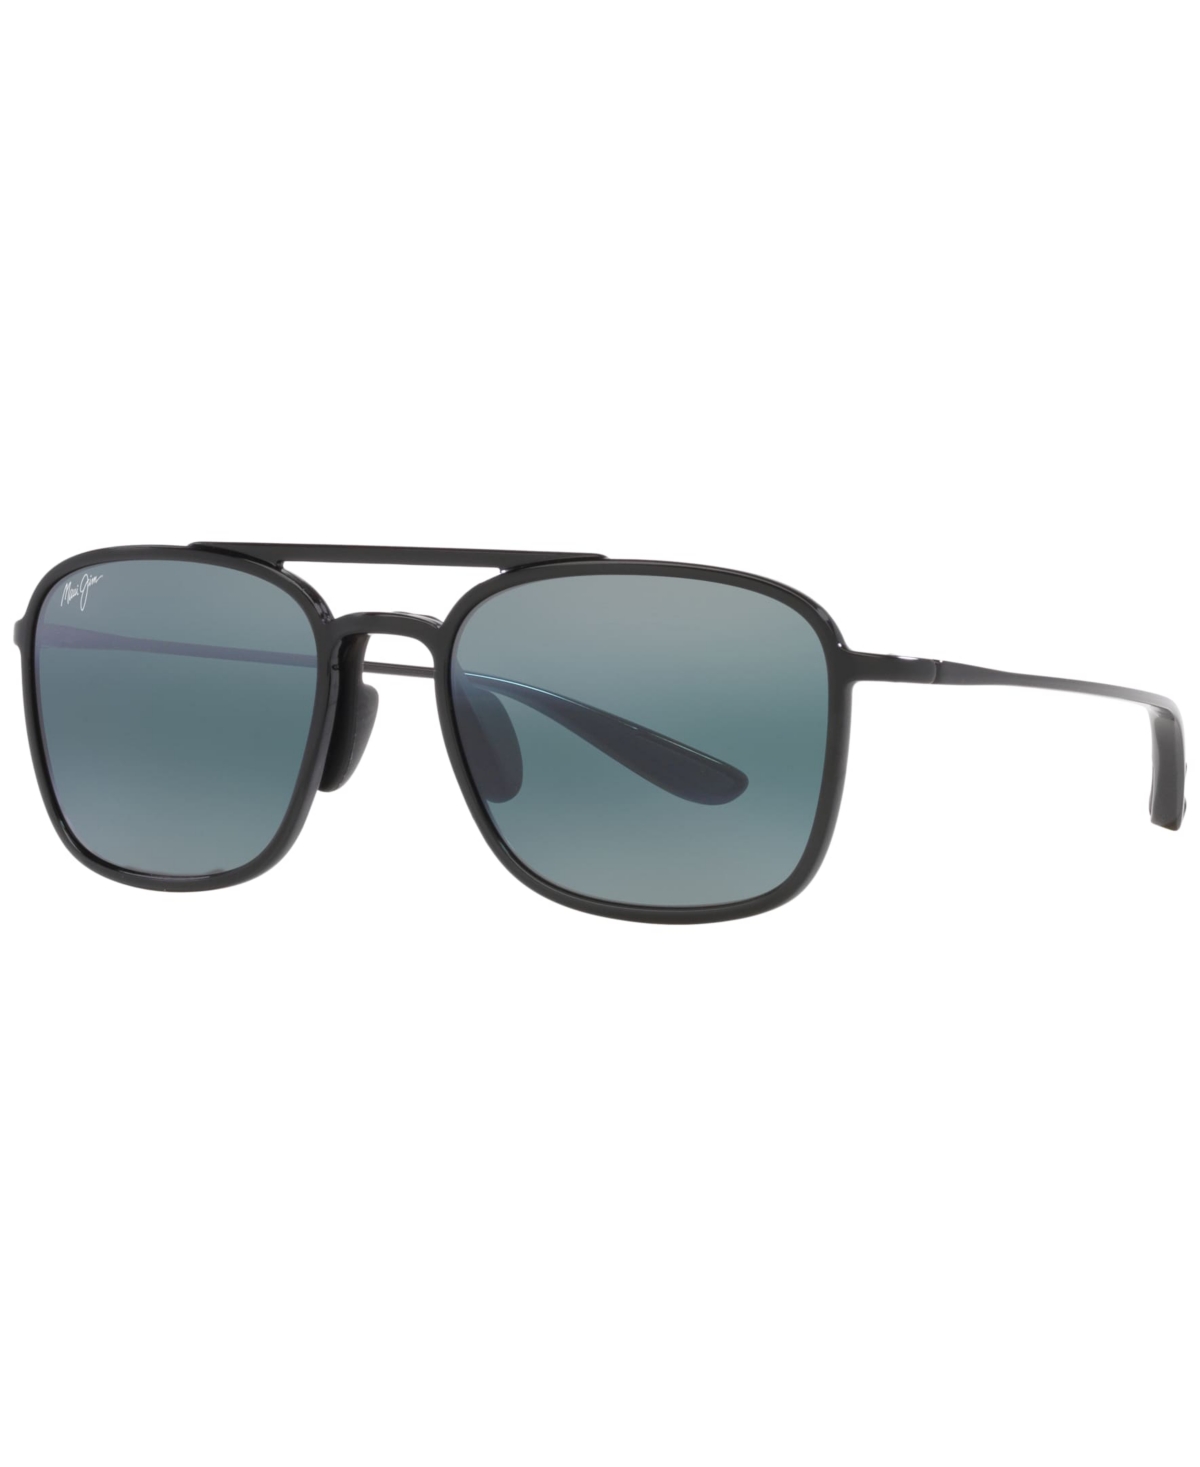 Maui Jim Unisex Keokea 55 Sunglasses, Mj00068355-x In Black Shiny